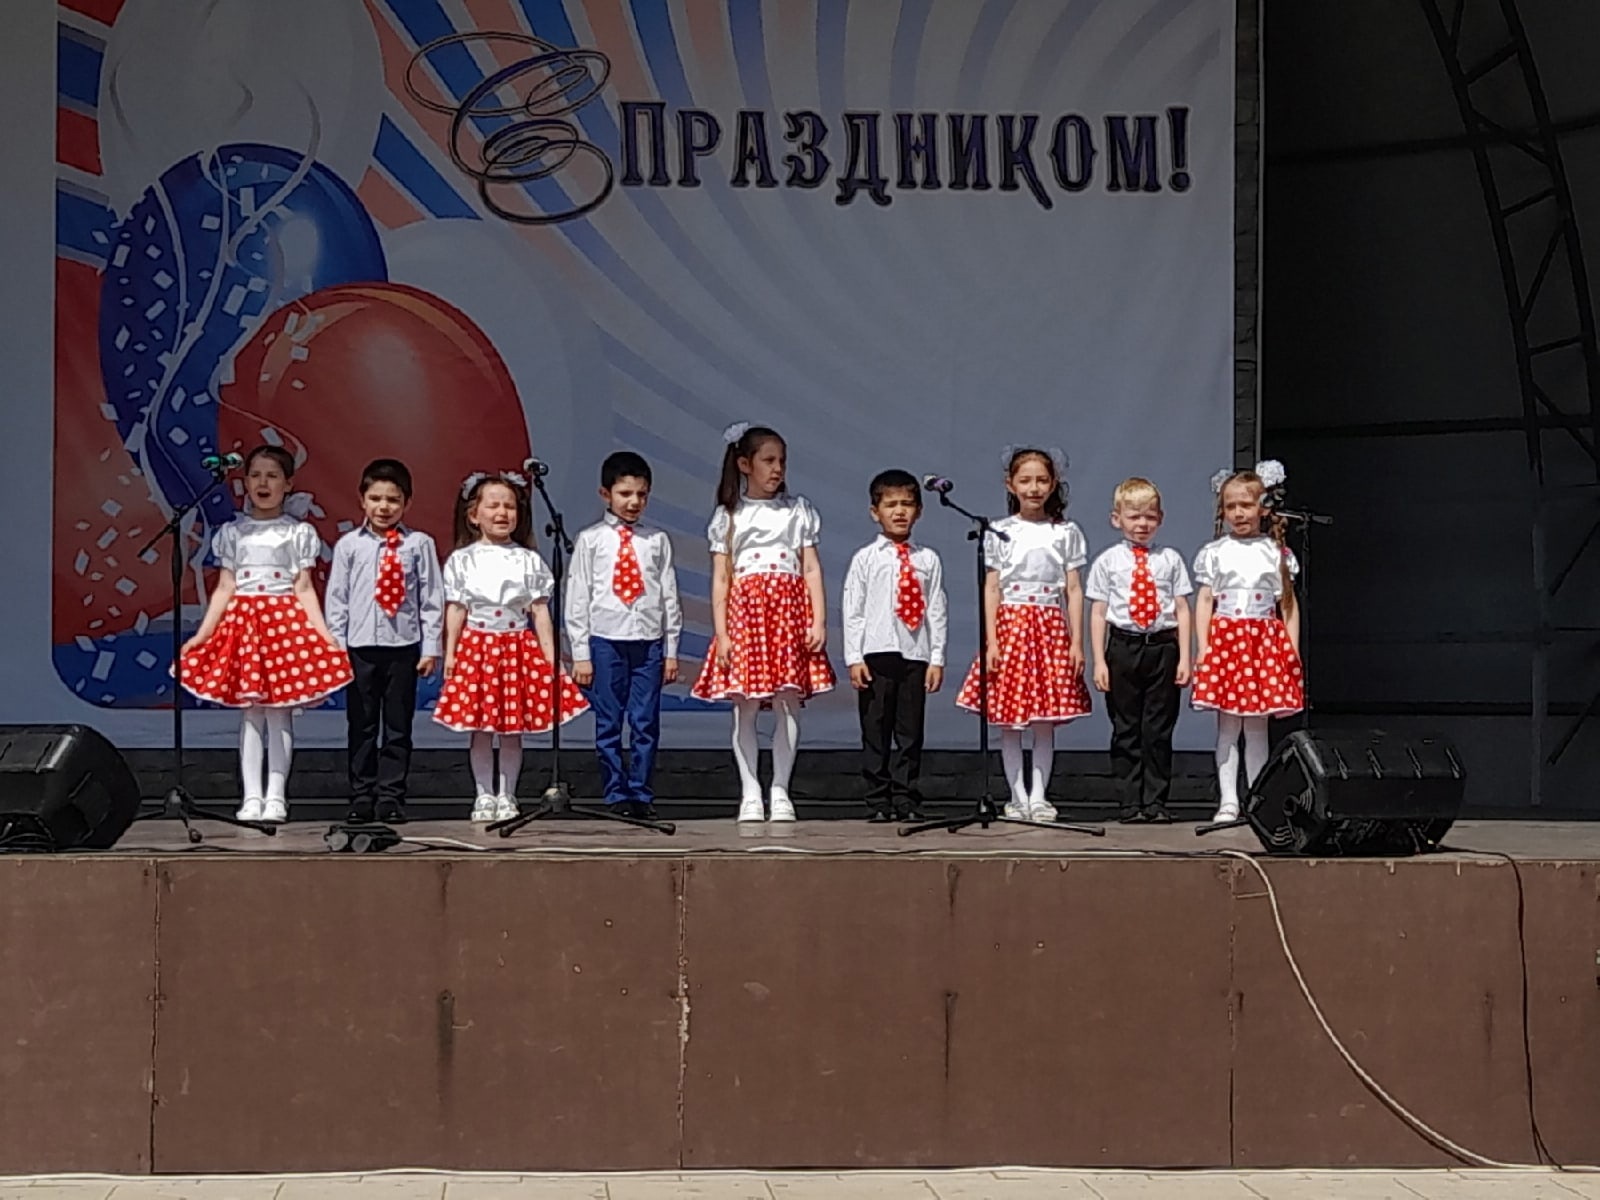 Детский сад №7 принял активное участие в праздничном концерте на открытии городского парка. #1мая